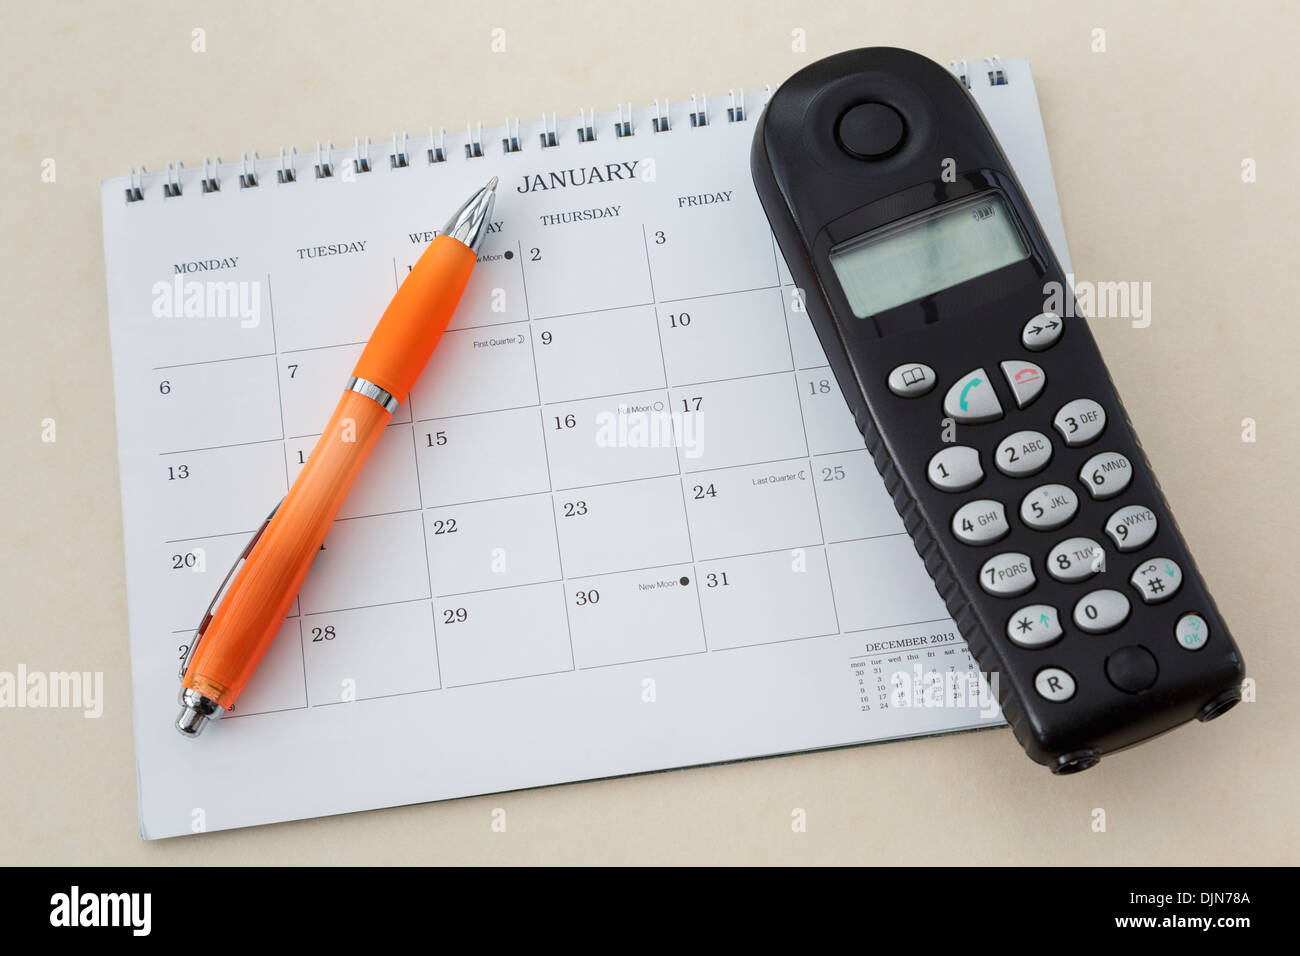 Téléphone sans fil combiné avec un stylo et un calendrier vide sur la page pour le mois de janvier 2014 Banque D'Images